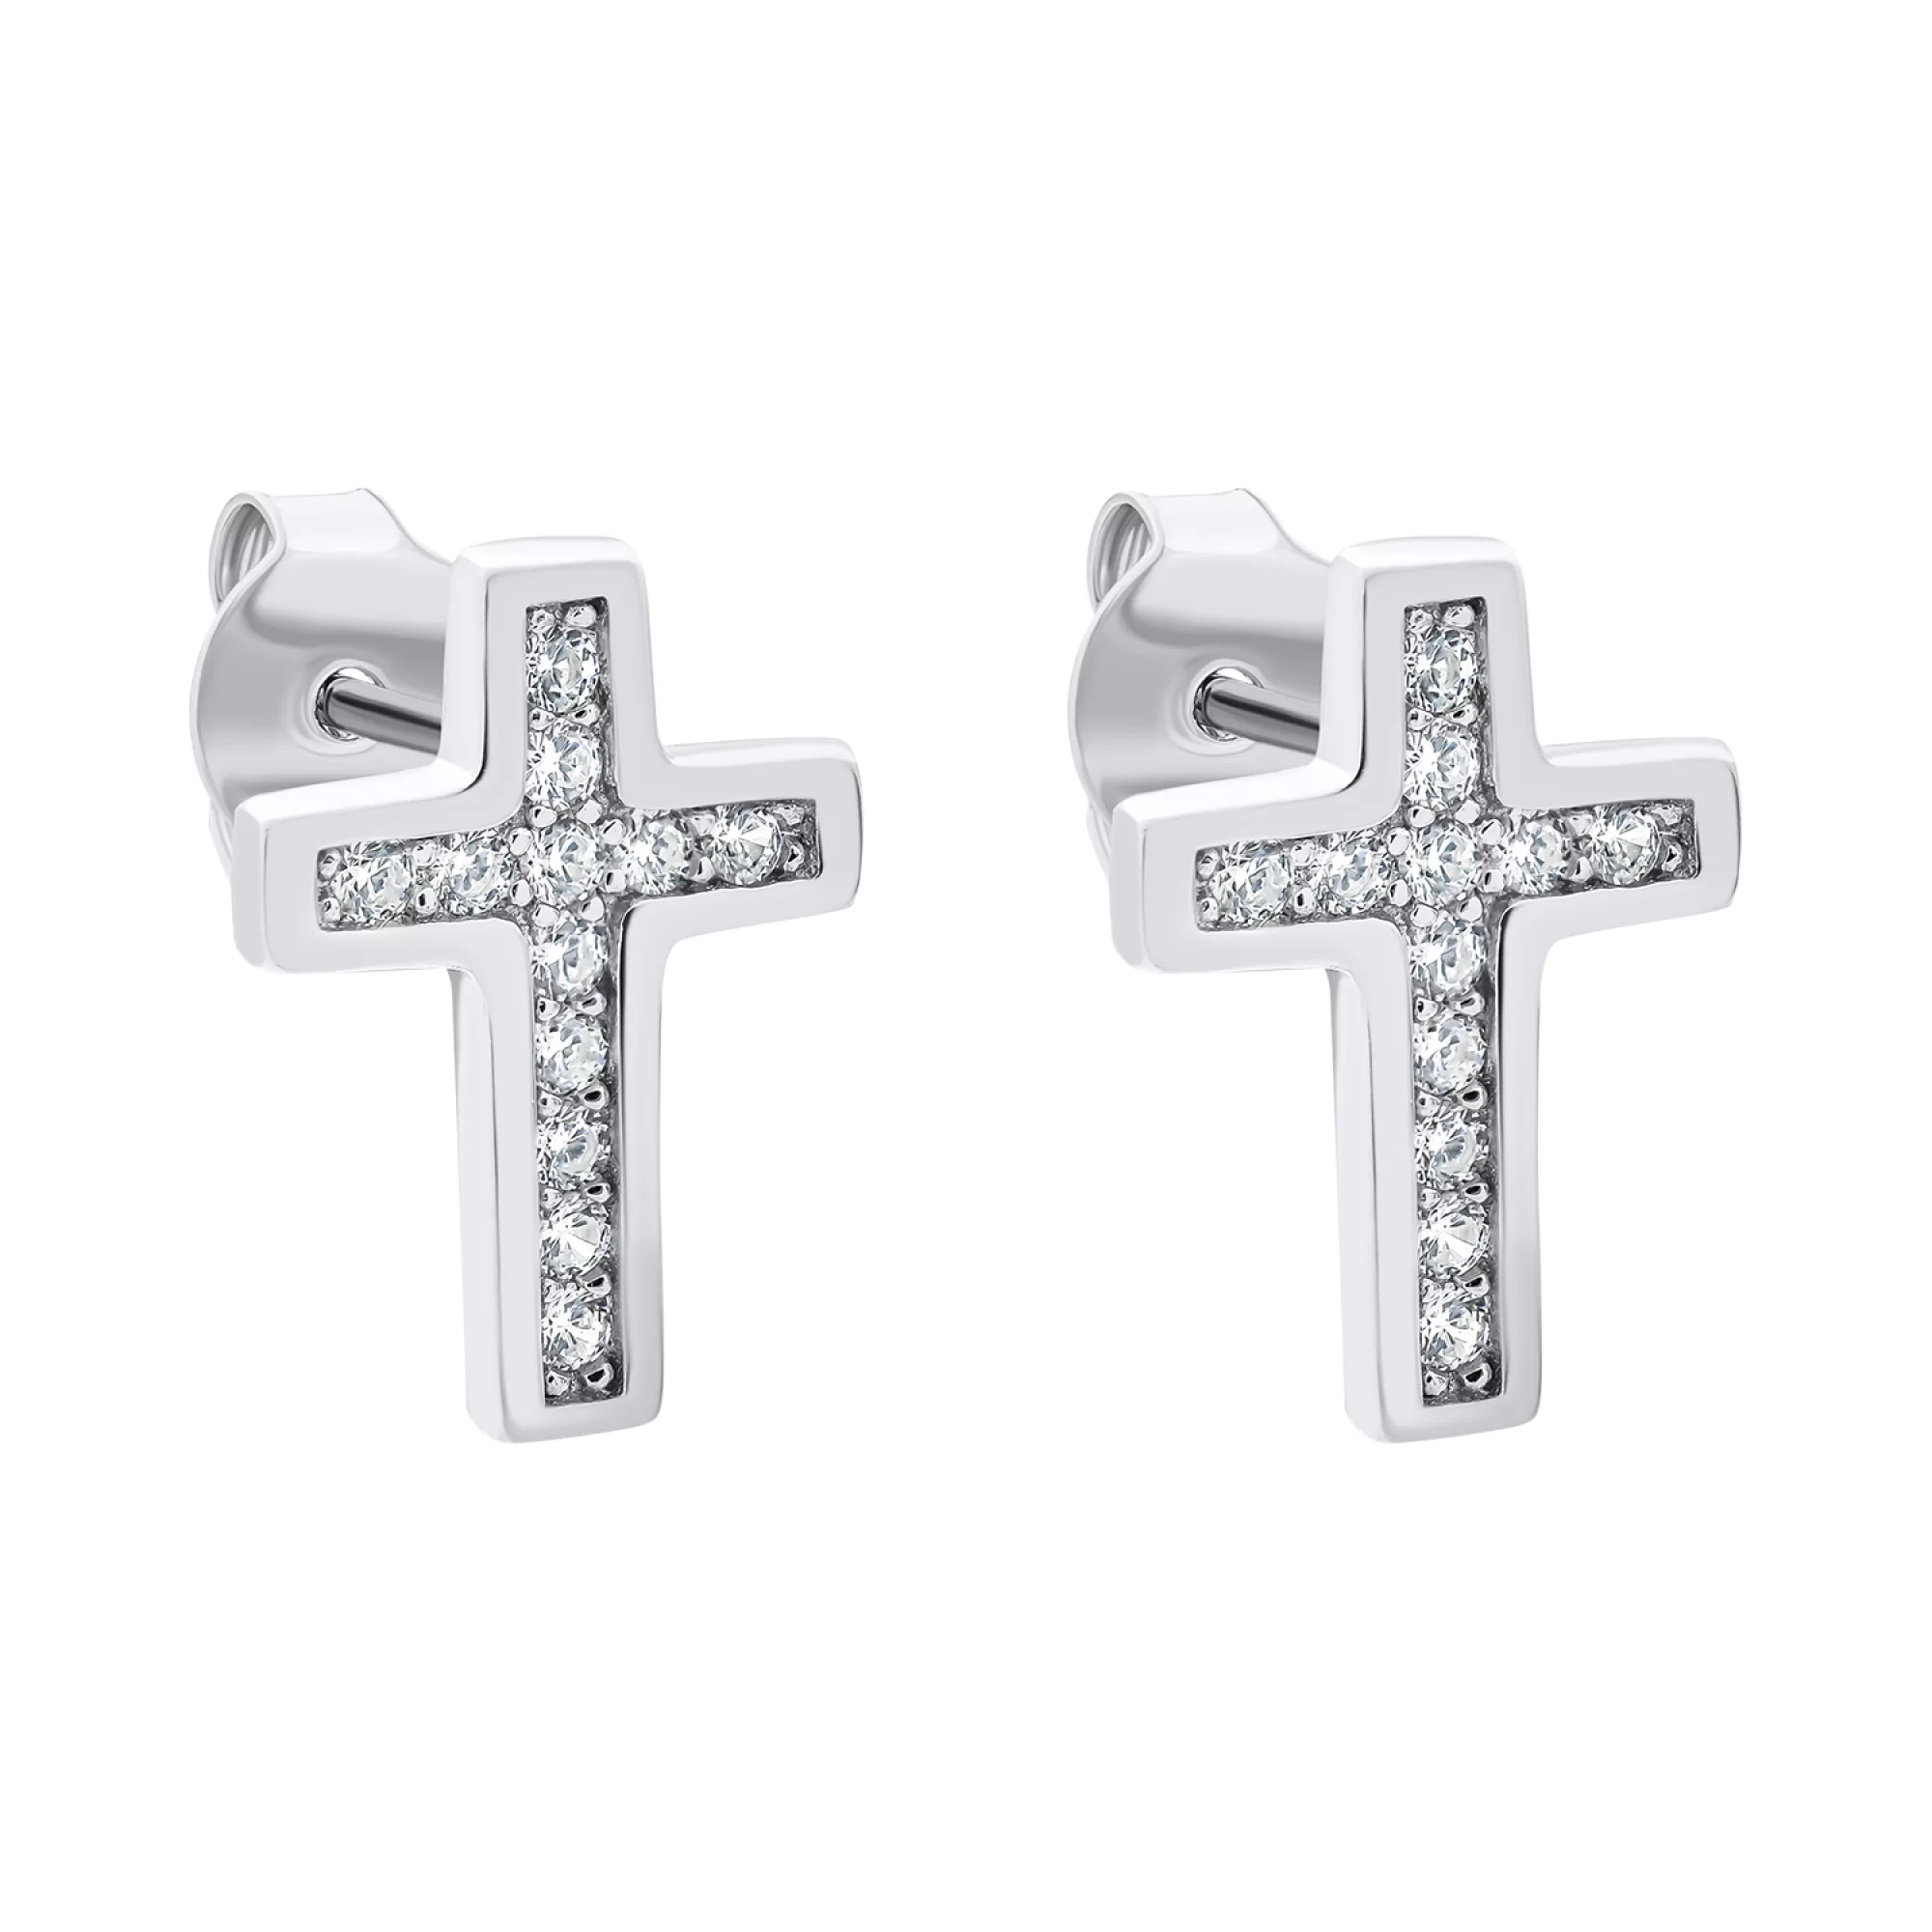 Сережки-гвоздики хрестики зі срібла з фіанітами  - 1521645 – зображення 1